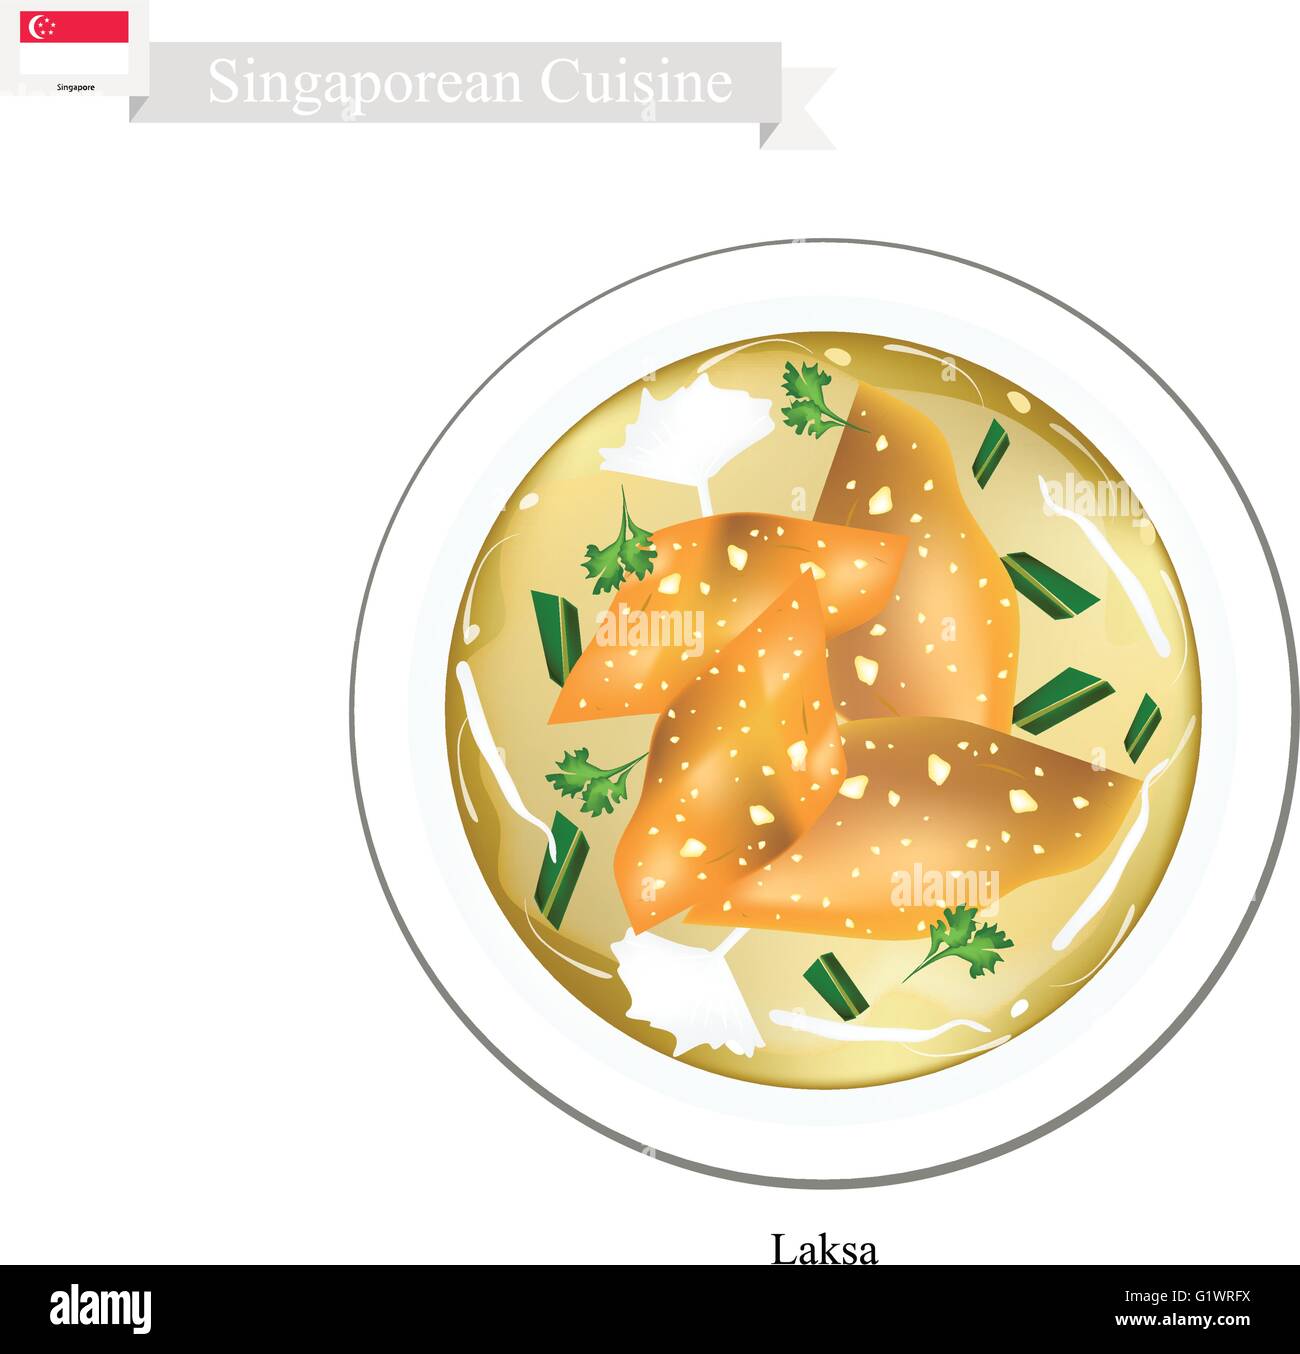 La cuisine singapourienne, Laksa ou traditionnelles et de nouilles de riz Dumpling servi en soupe épicée. L'un des plats les plus populaires dans Singapo Illustration de Vecteur